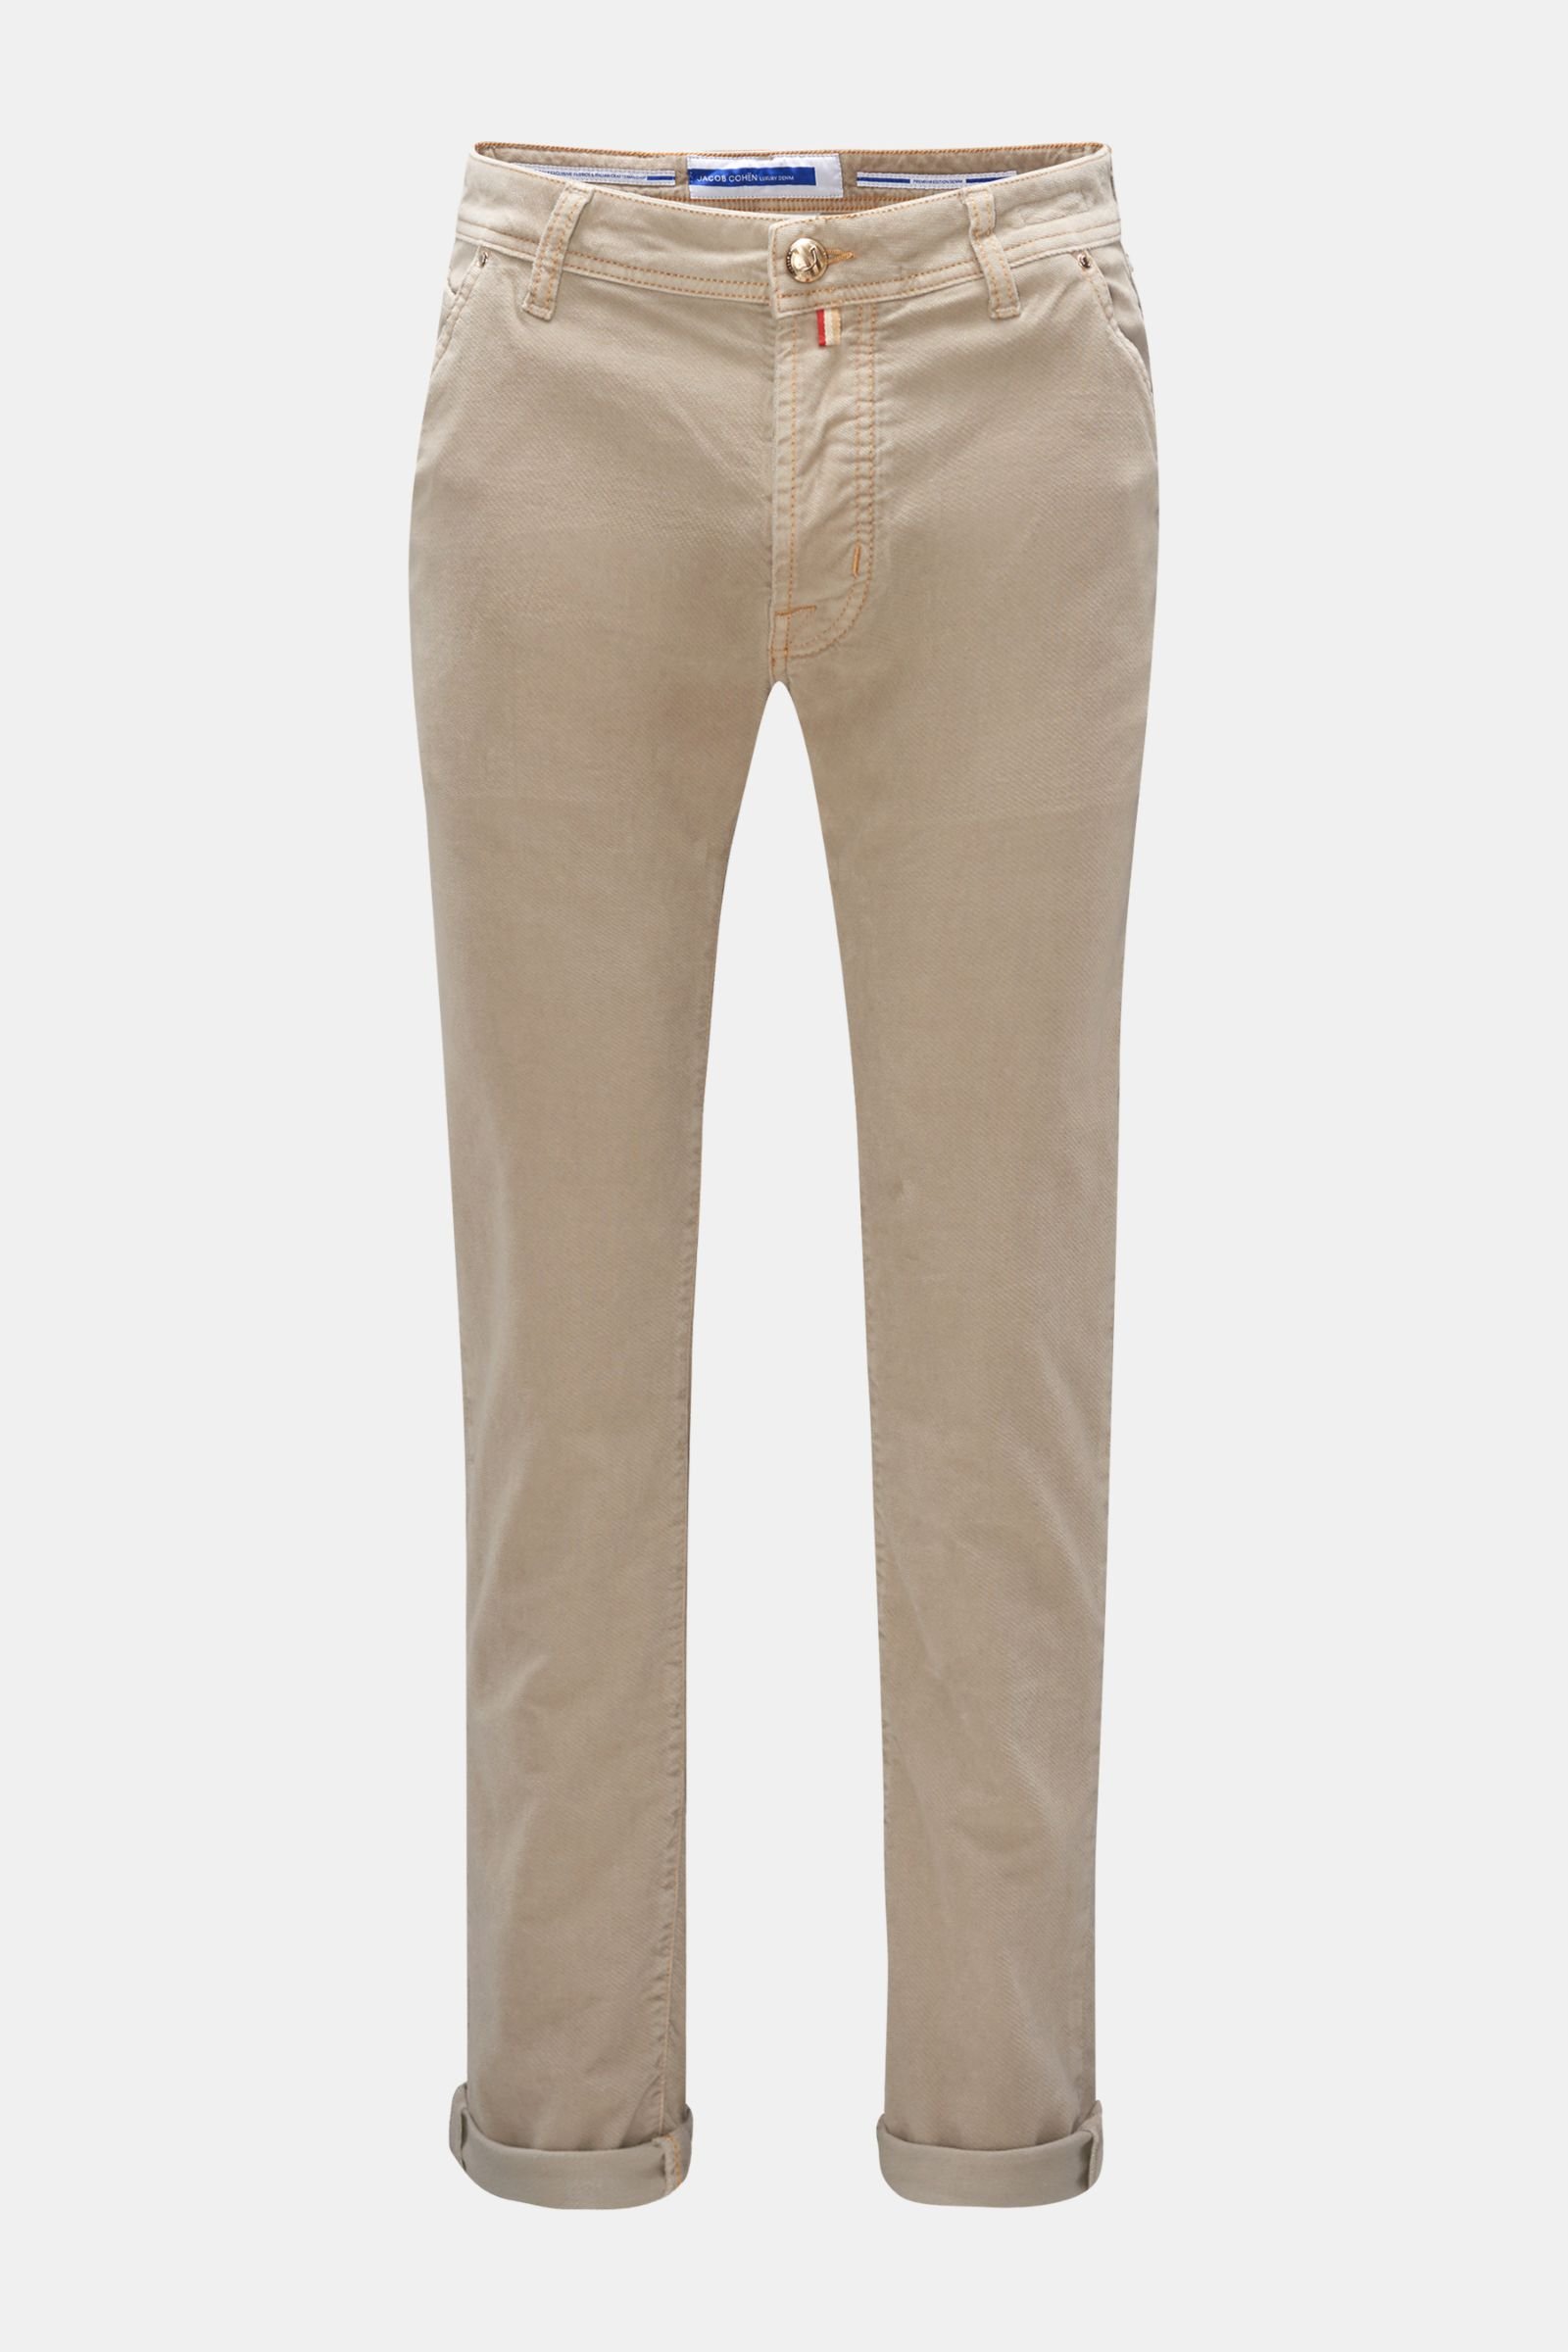 Fustian trousers 'Leonard' beige (formerly J613)